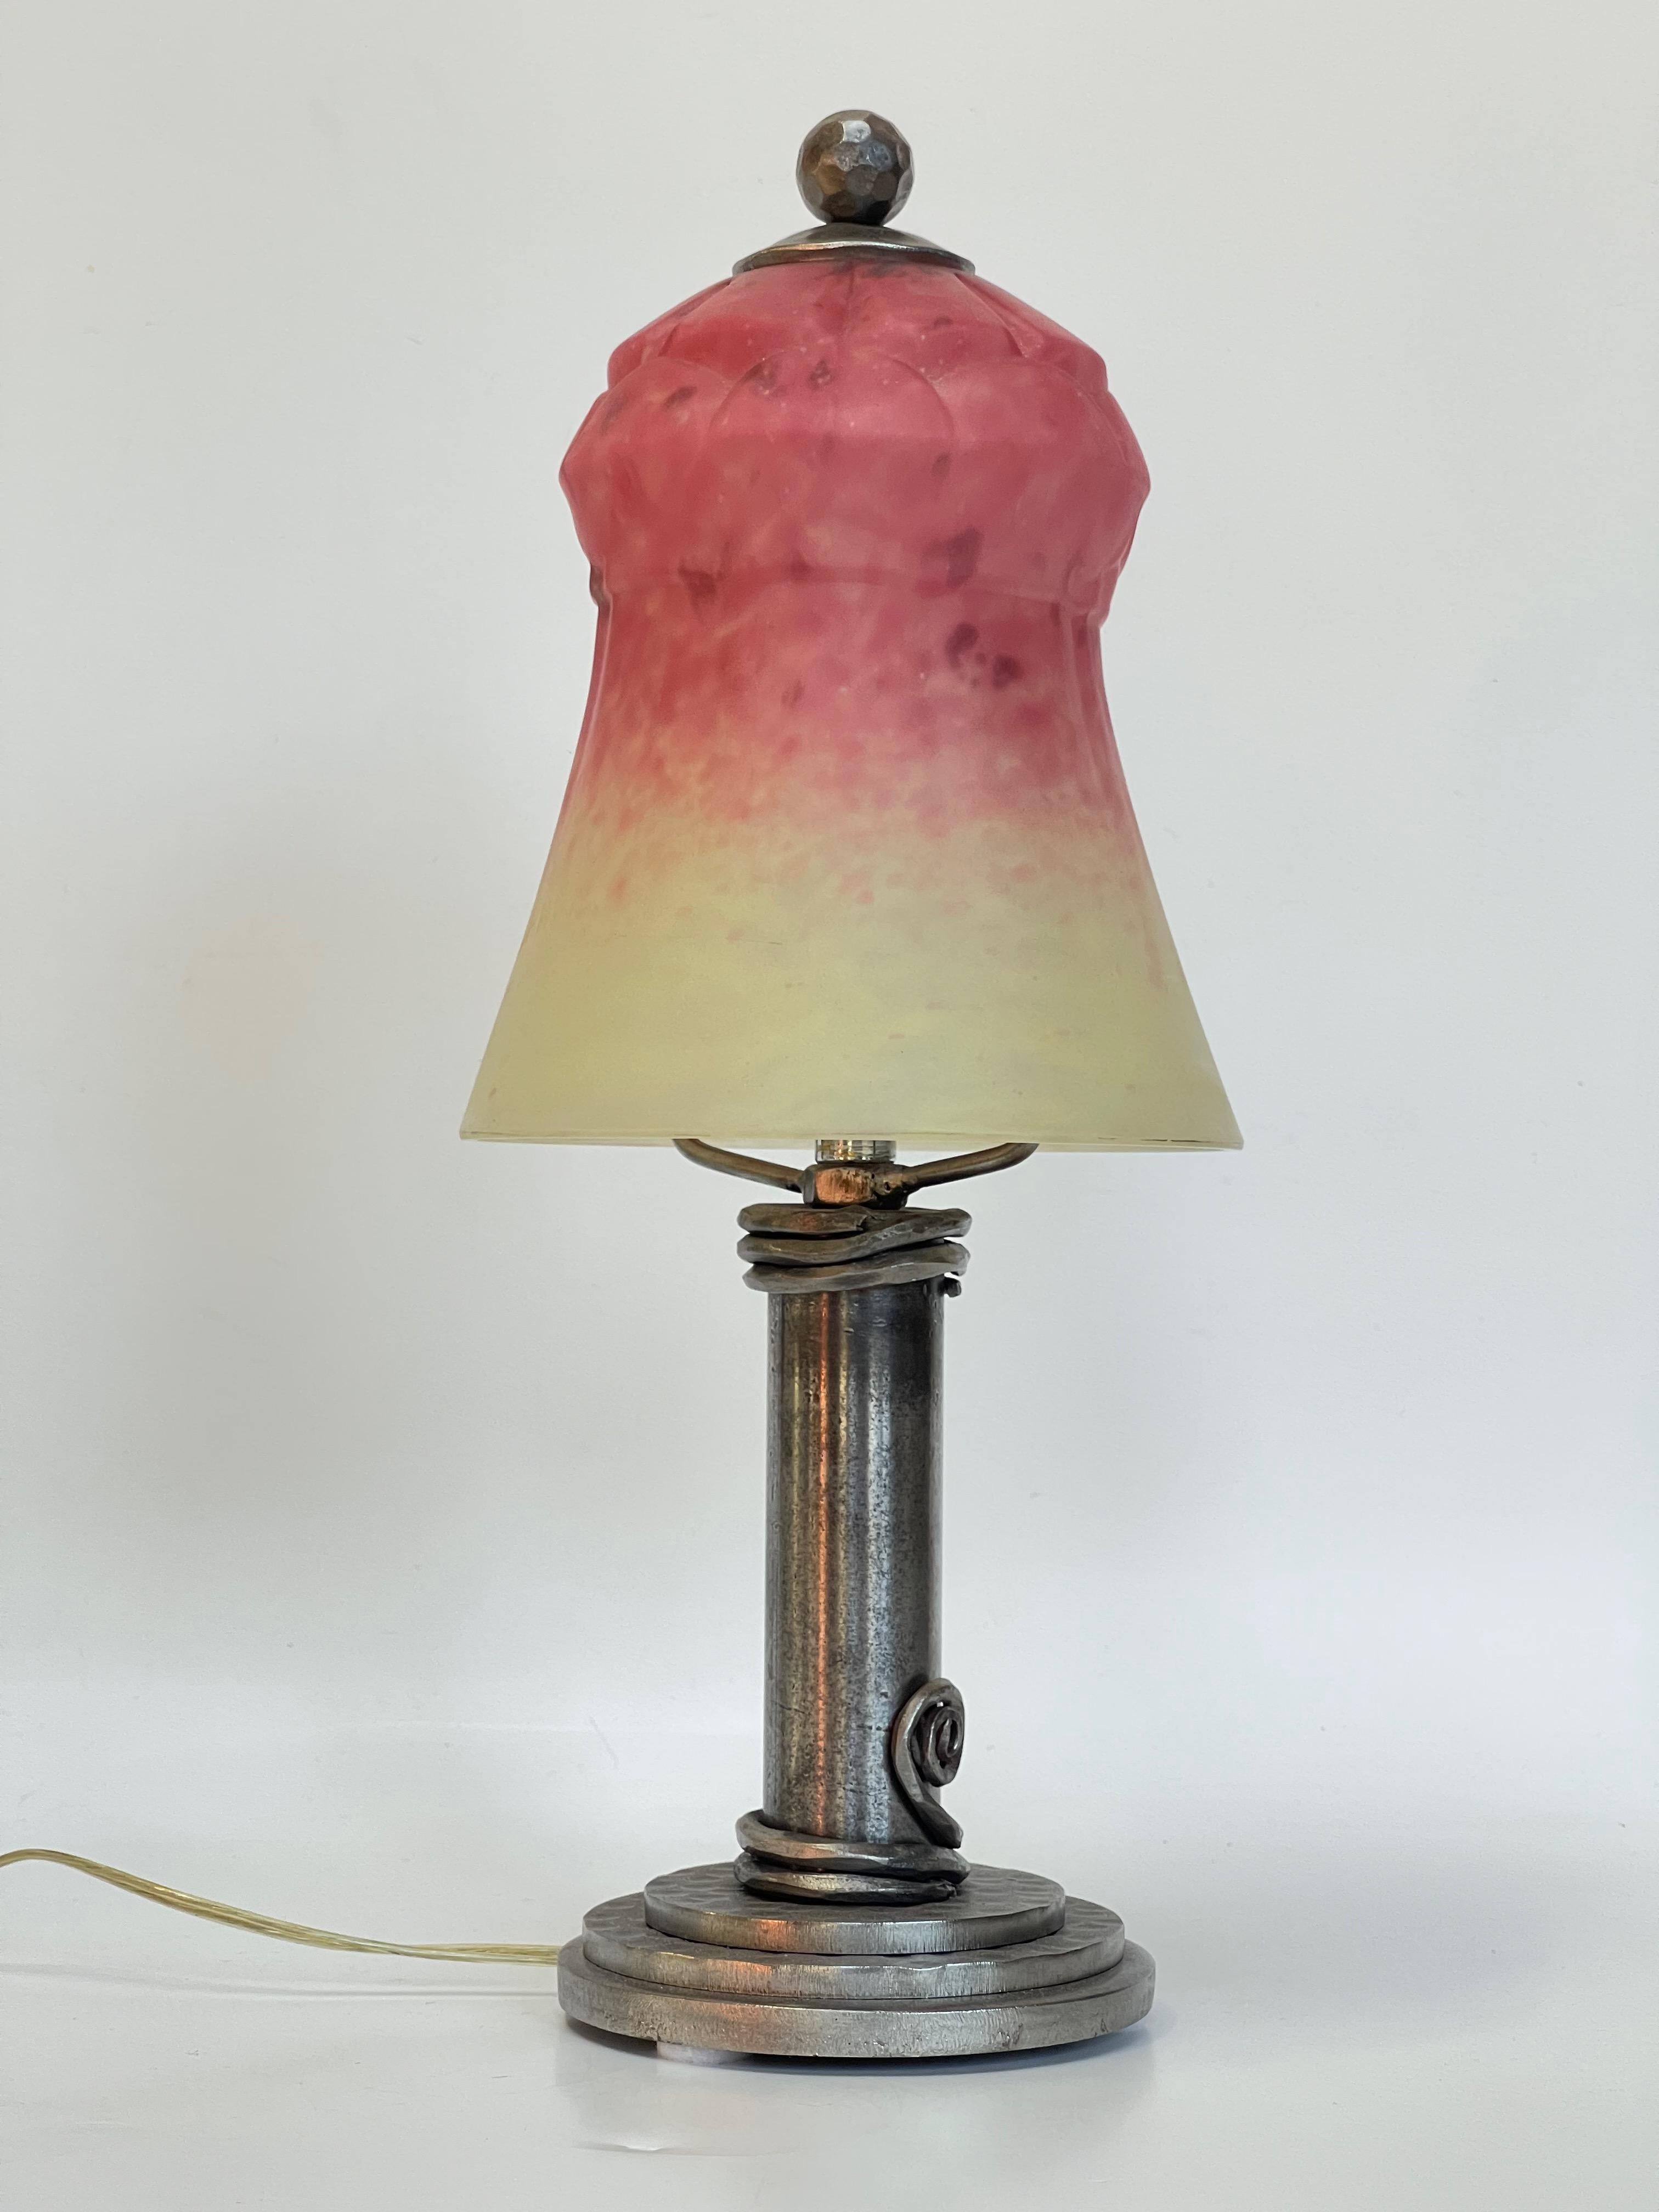 Lampe um 1930 Schmiedeeisen Fuß und Tulpe in geformten mundgeblasenem Glas Paste unterzeichnet Schneider in Himbeere Farbe und braun gesprenkelt Creme die Lampe ist elektrifiziert und in einwandfreiem Zustand.
Die Unterschrift ist unmöglich zu